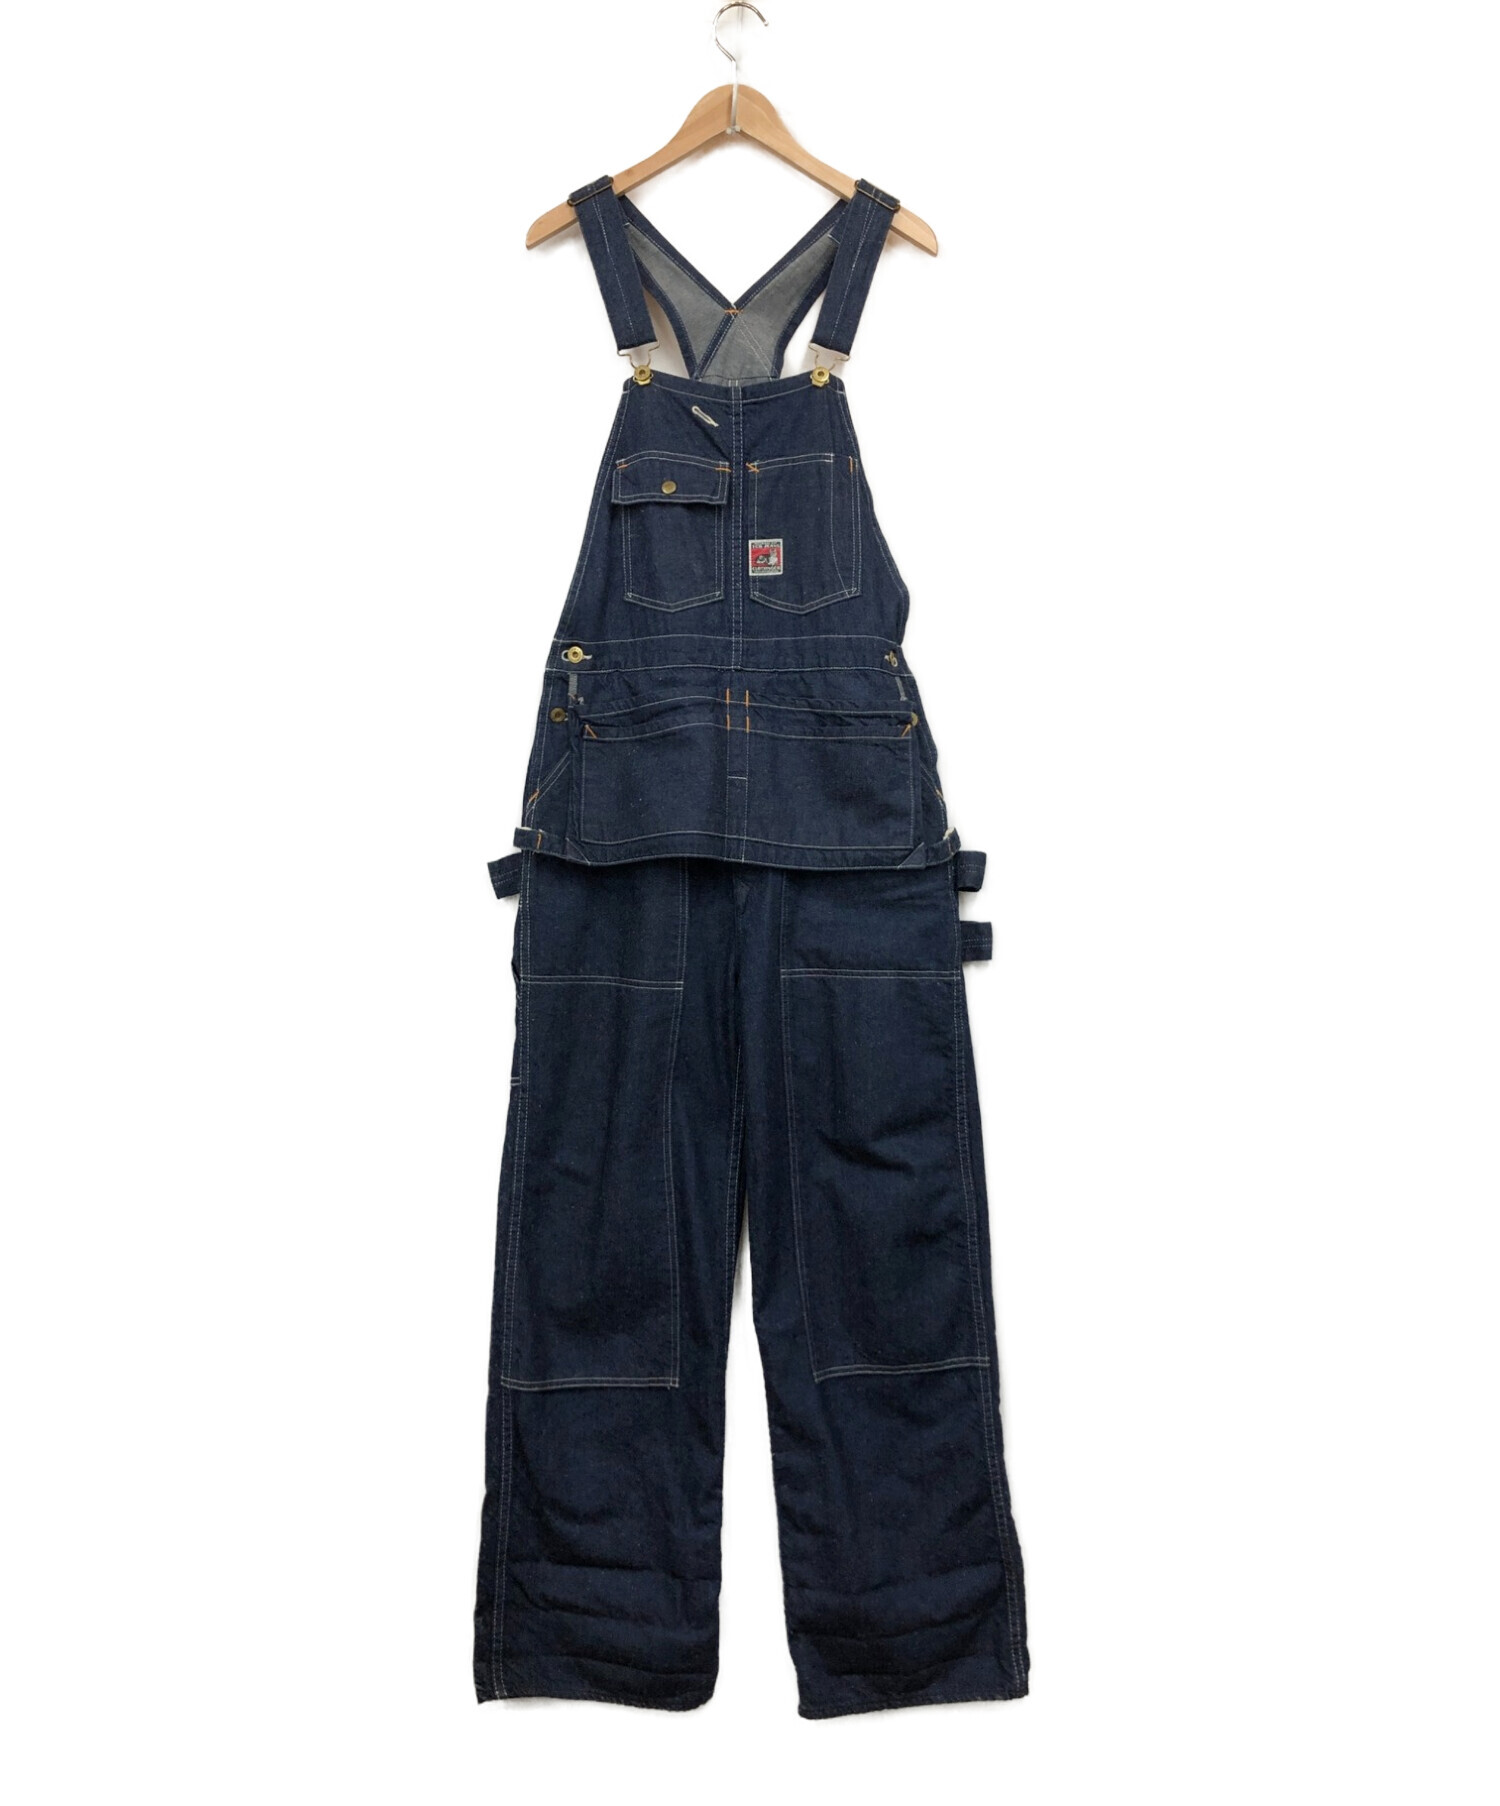 TCB jeans (ティーシービー ジーンズ) オーバーオール ブルー サイズ:W28